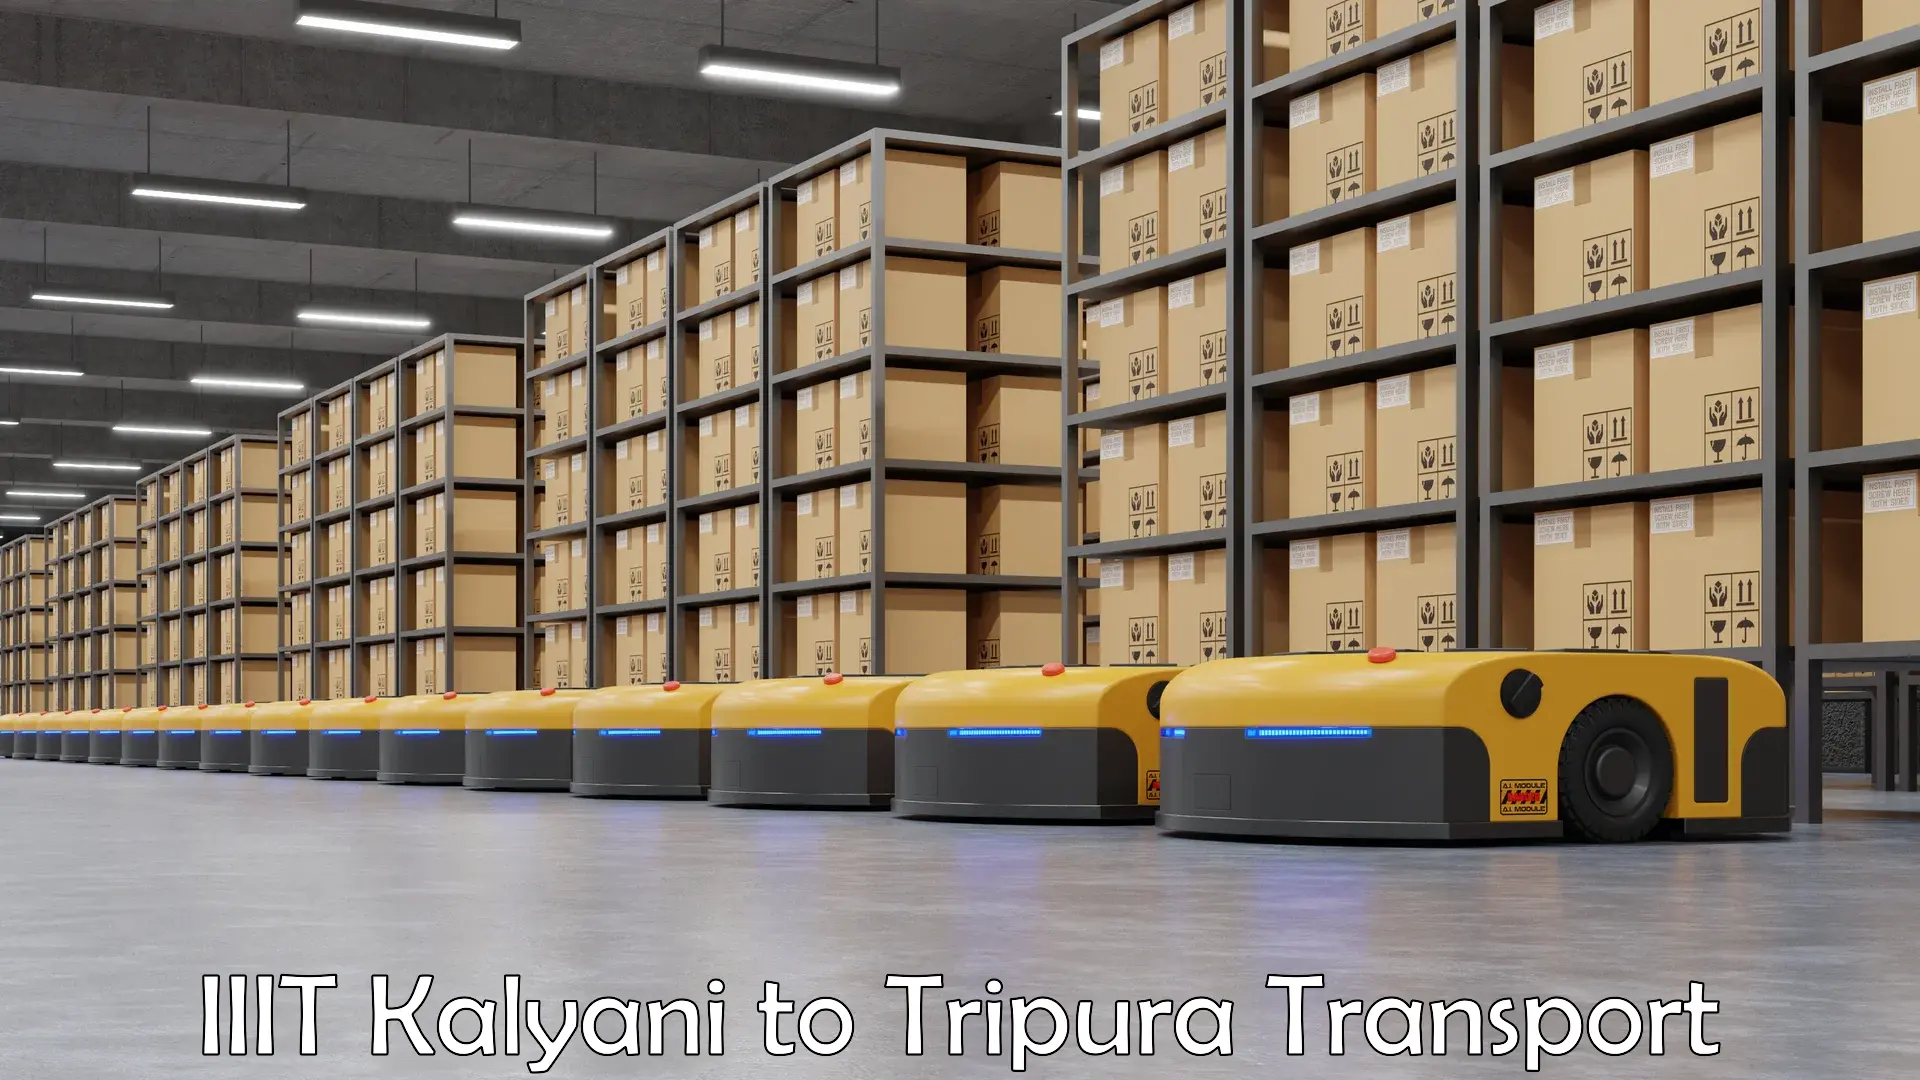 India truck logistics services IIIT Kalyani to Amarpur